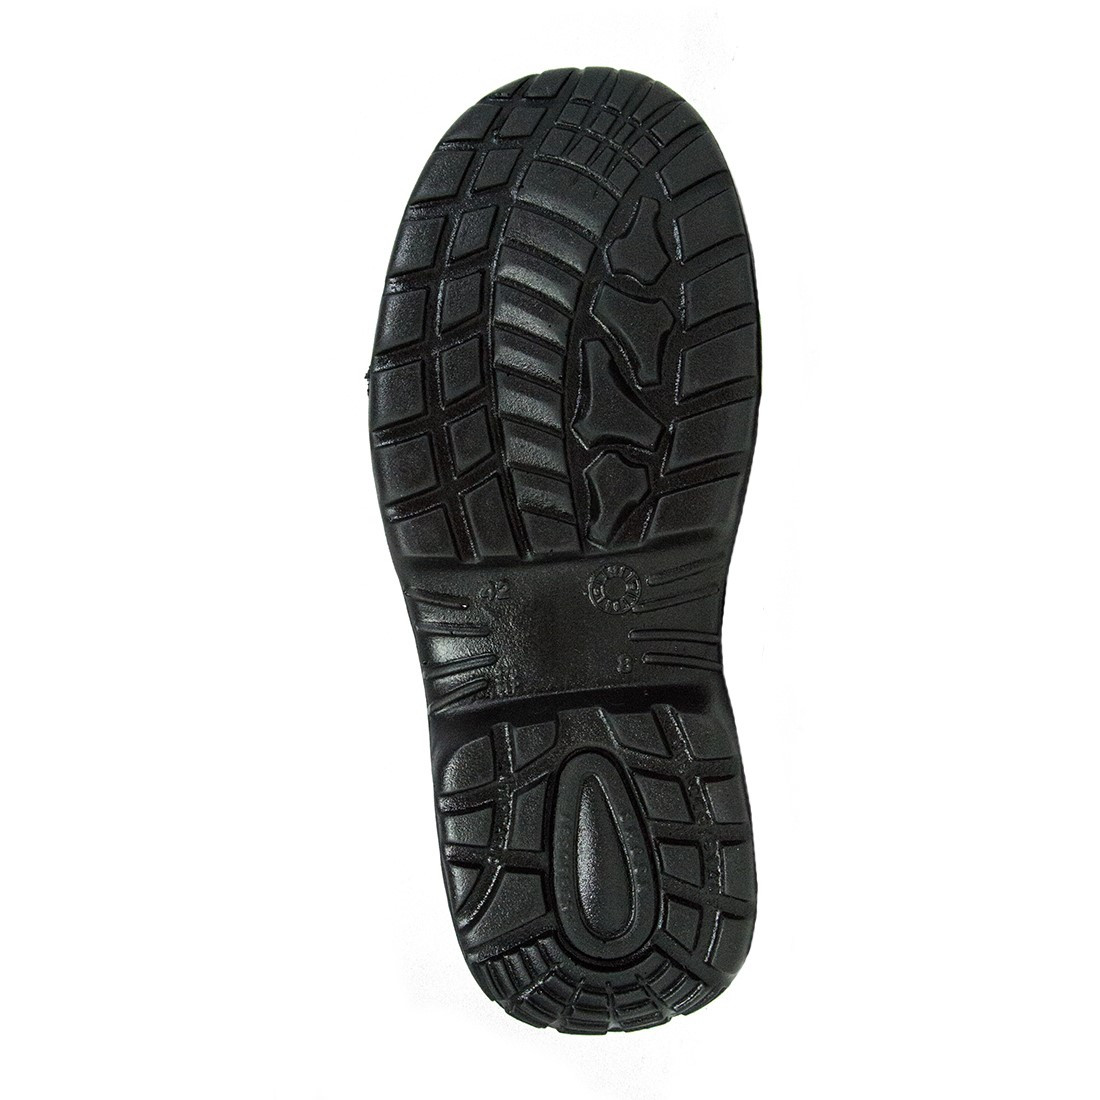 Victoria Boot S1P SRC - Les chaussures de protection